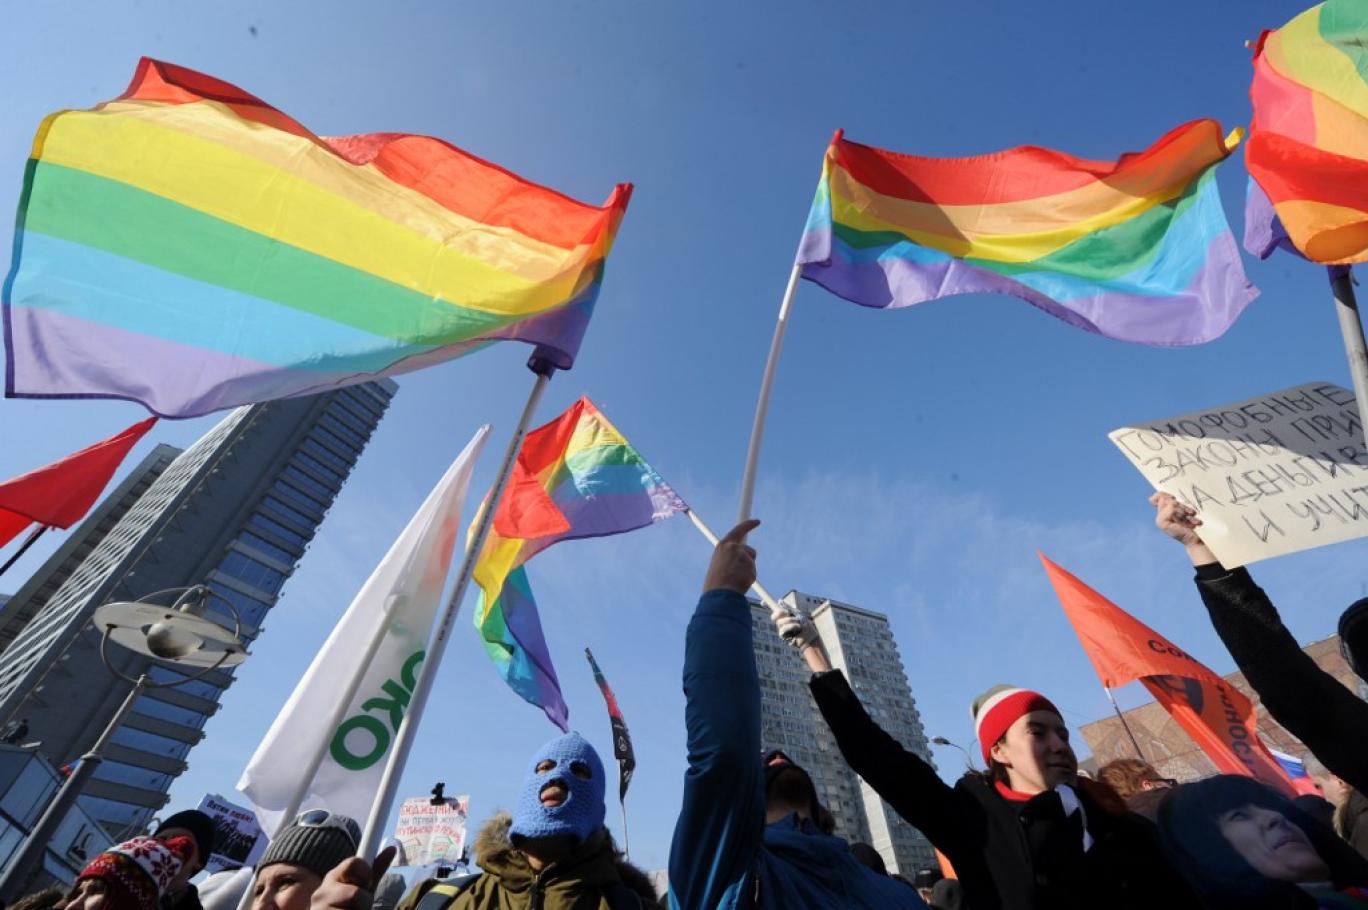 «Лечение» от гомосексуальности: международный опыт, запреты, исследования - Афиша Daily